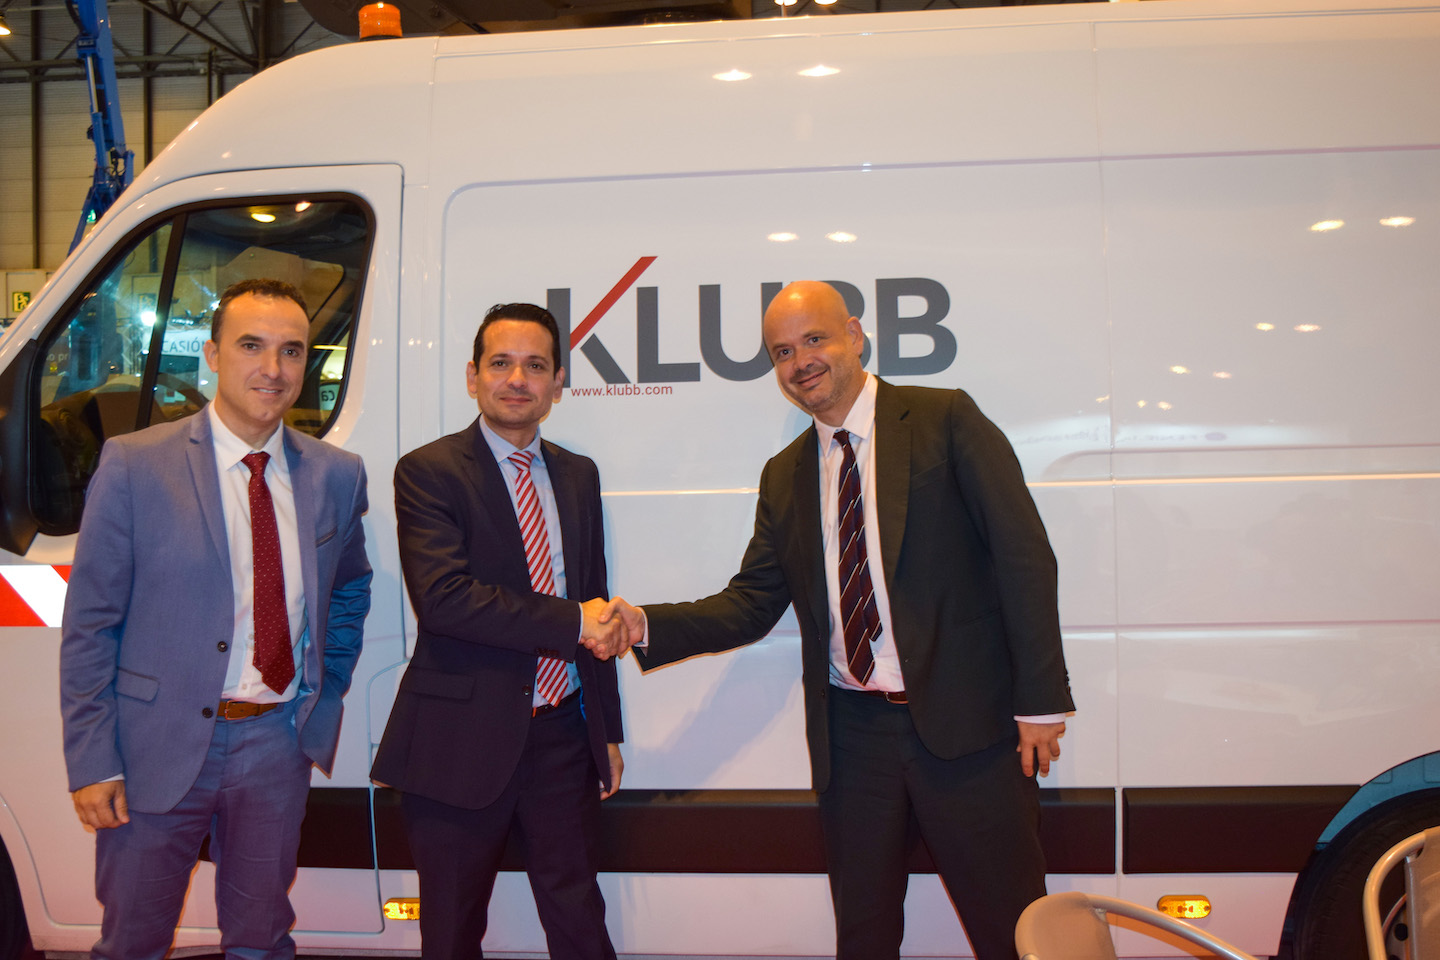 Klubb signe un nouveau partenariat en Espagne